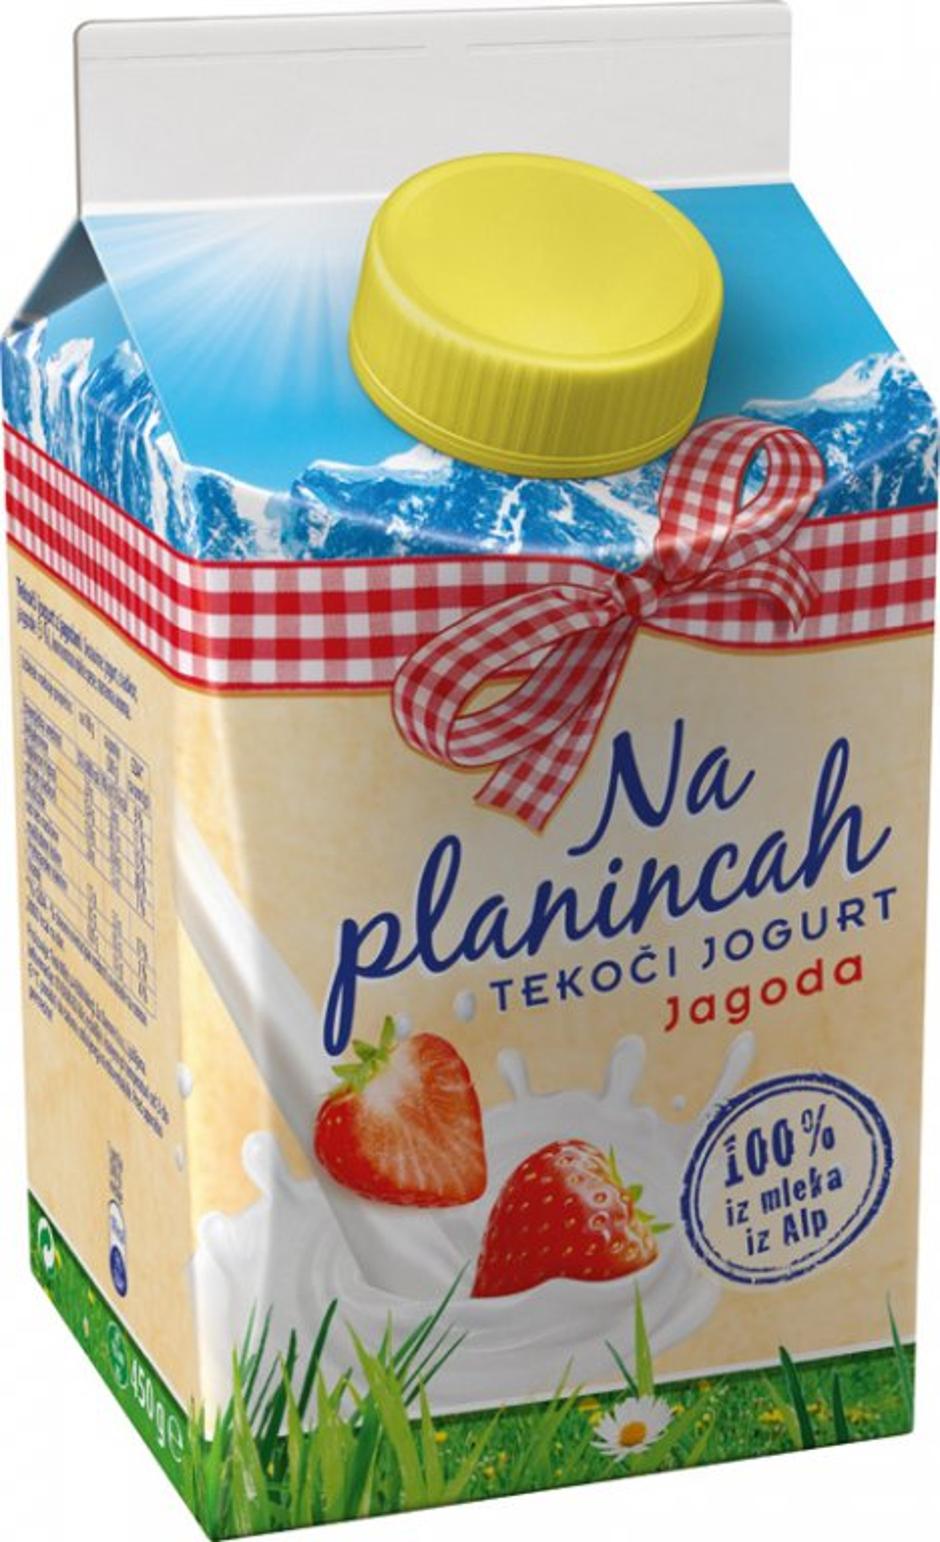 Danone jogurt | Avtor: Žurnal24 main